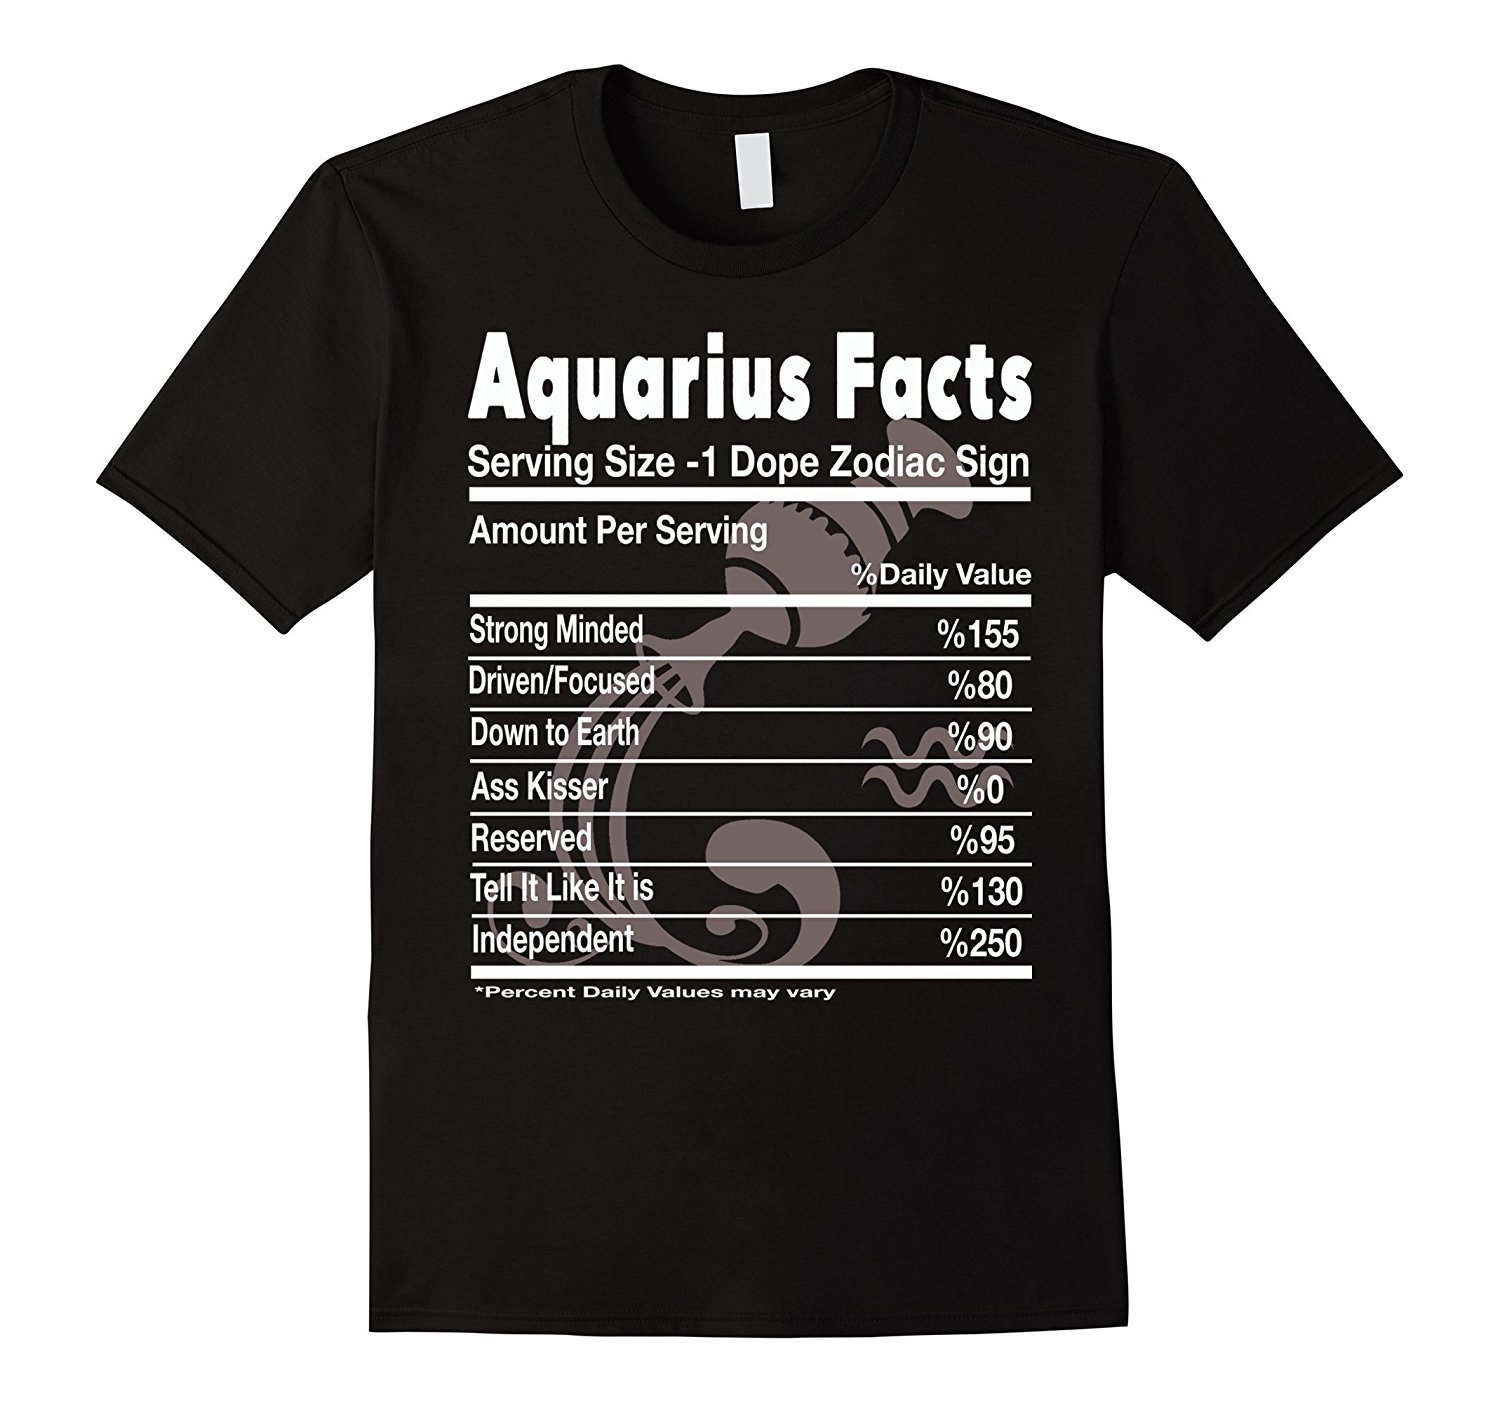 Aquarius Facts ' Aquarius Funny T Shirt